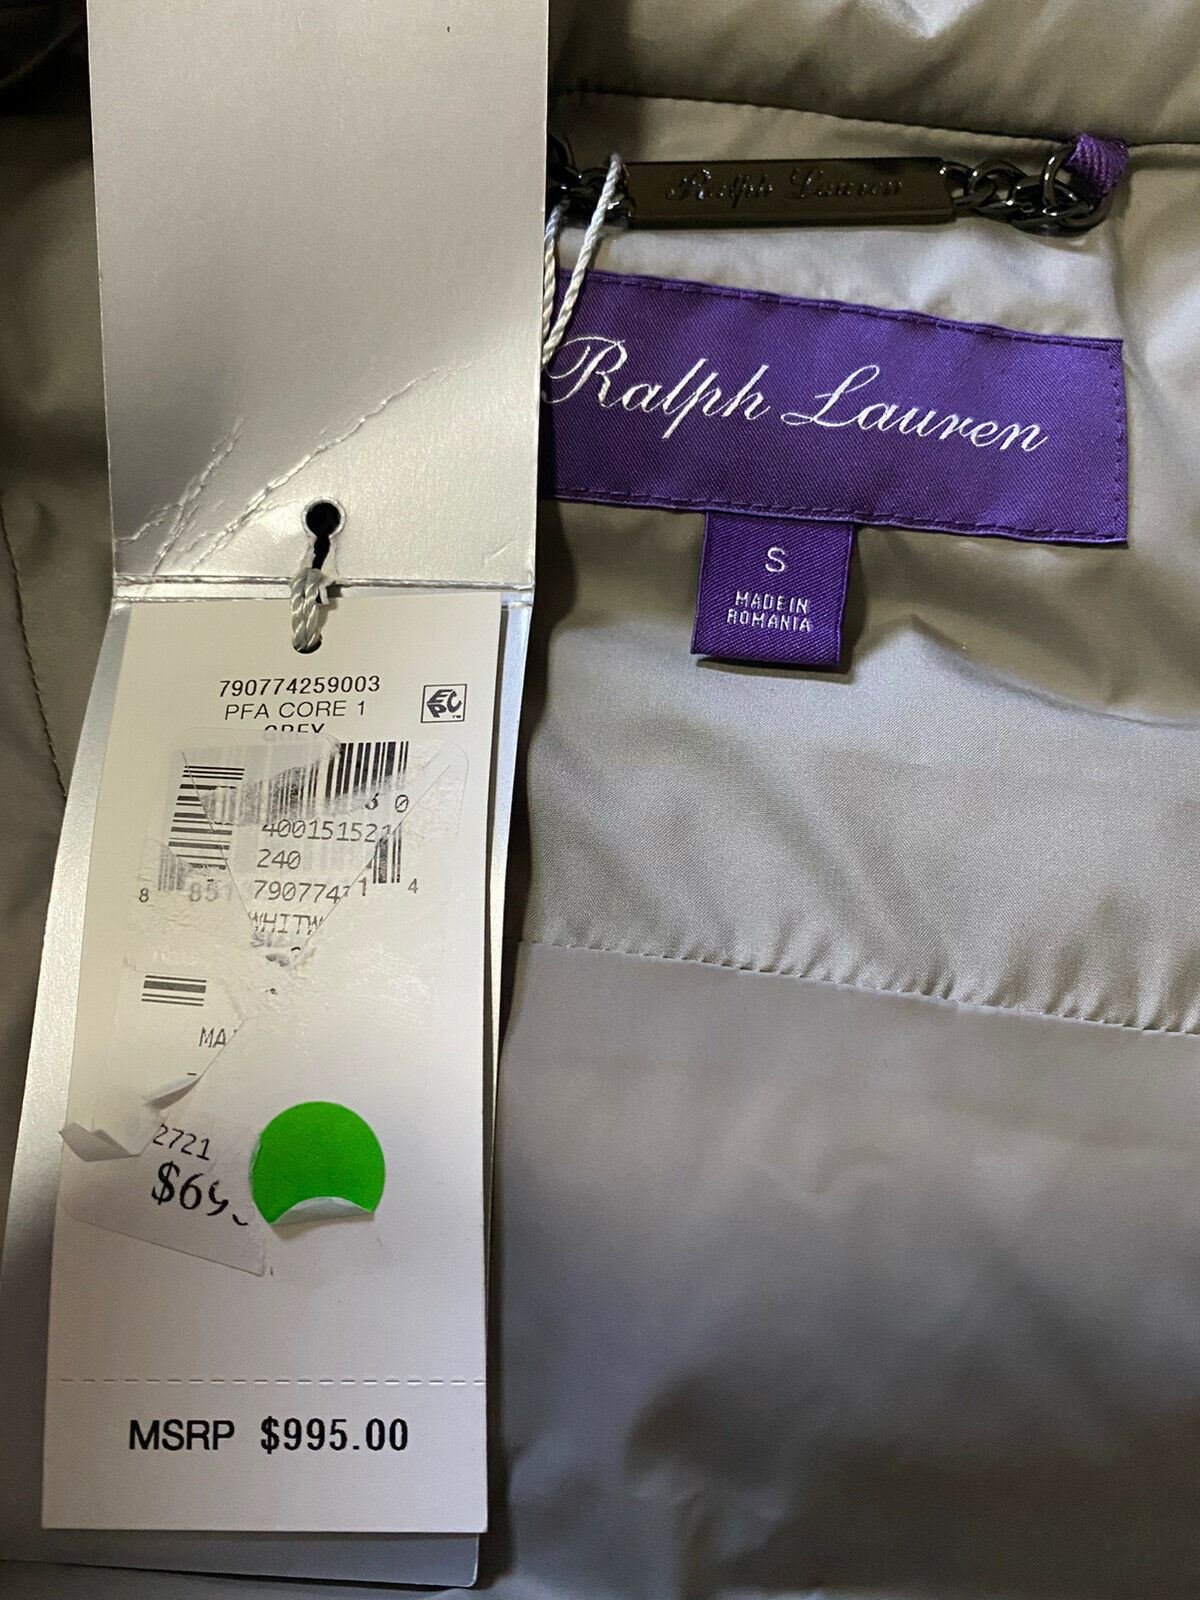 Новый мужской пуховик Ralph Lauren Purple Label за 995 долларов США, серый S